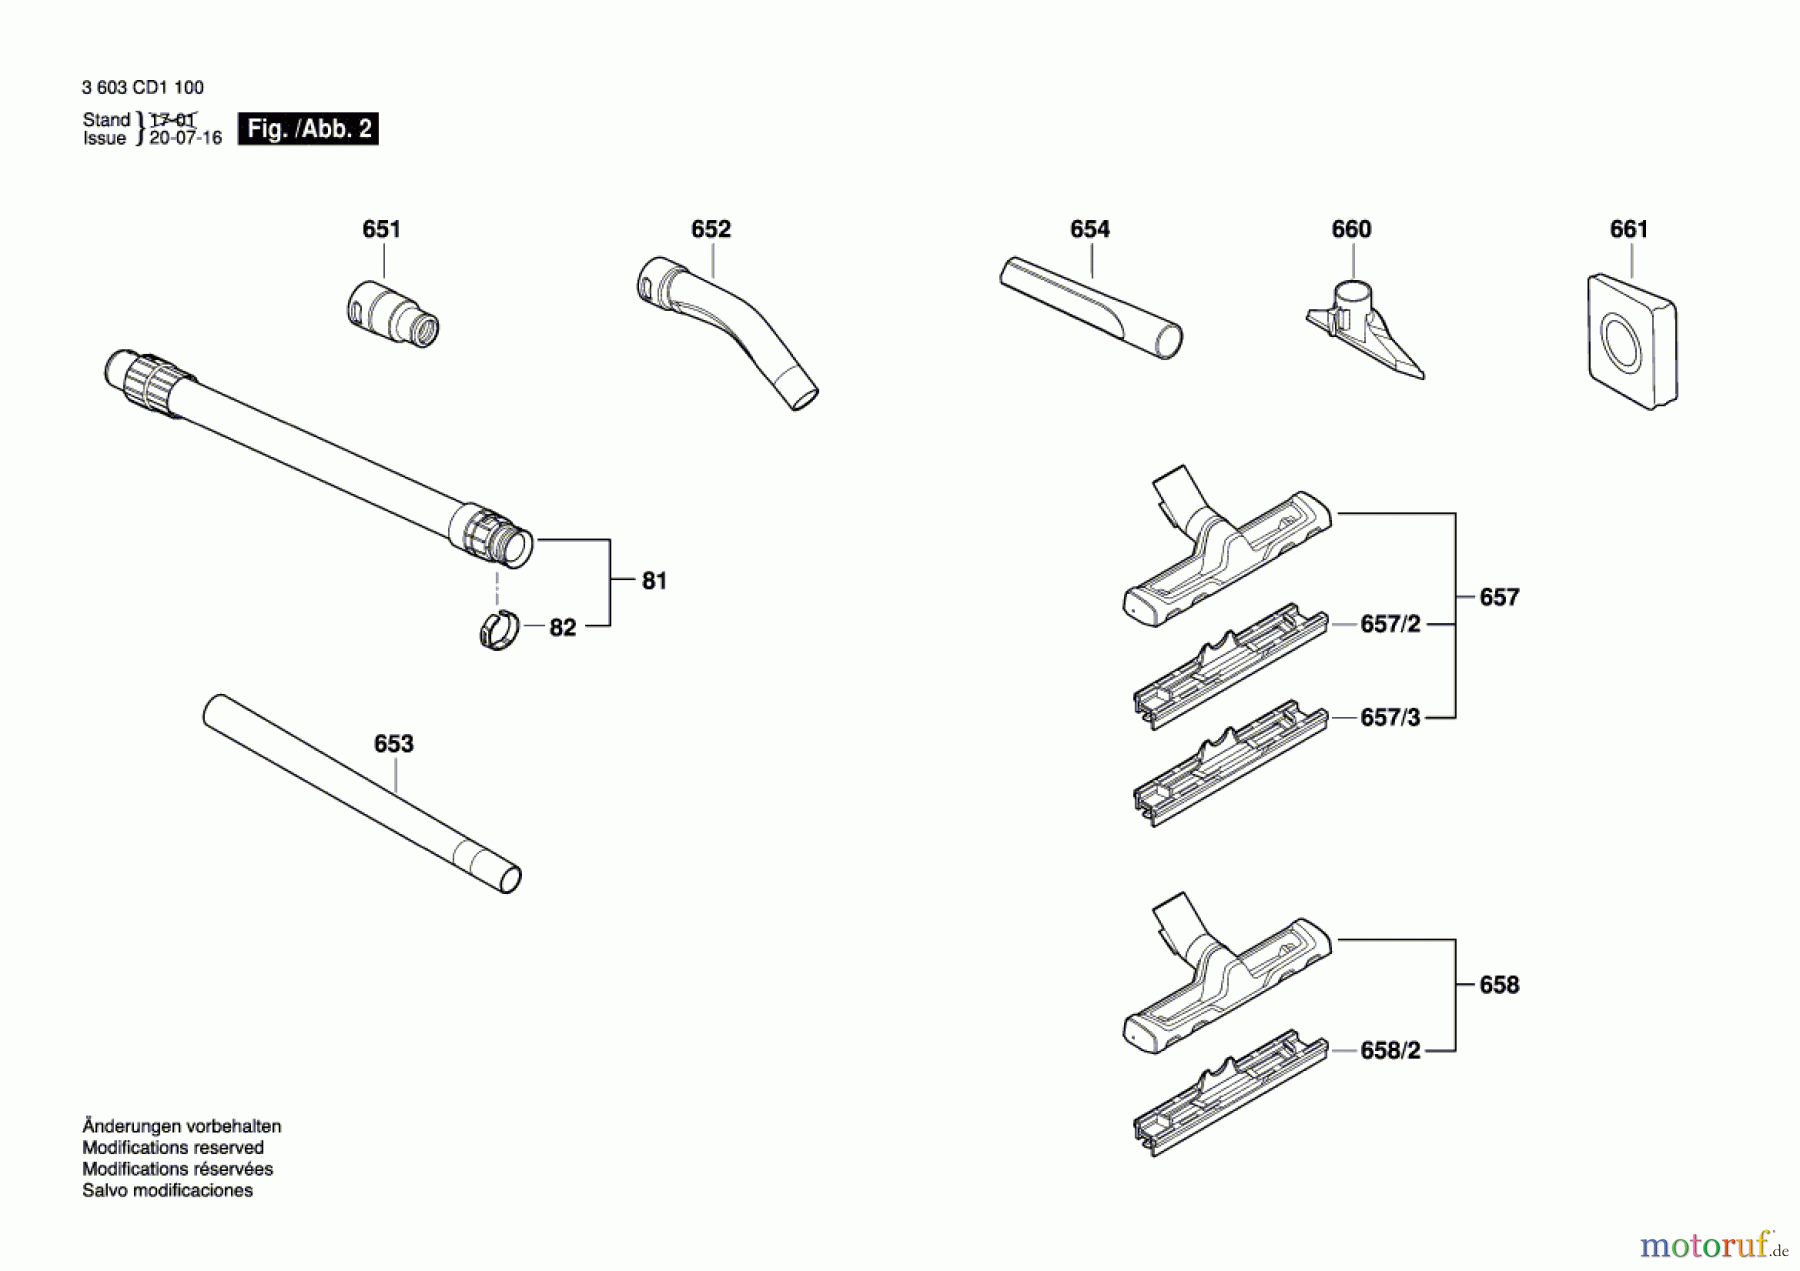  Bosch Werkzeug Allzwecksauger UniversalVac 15 Seite 2